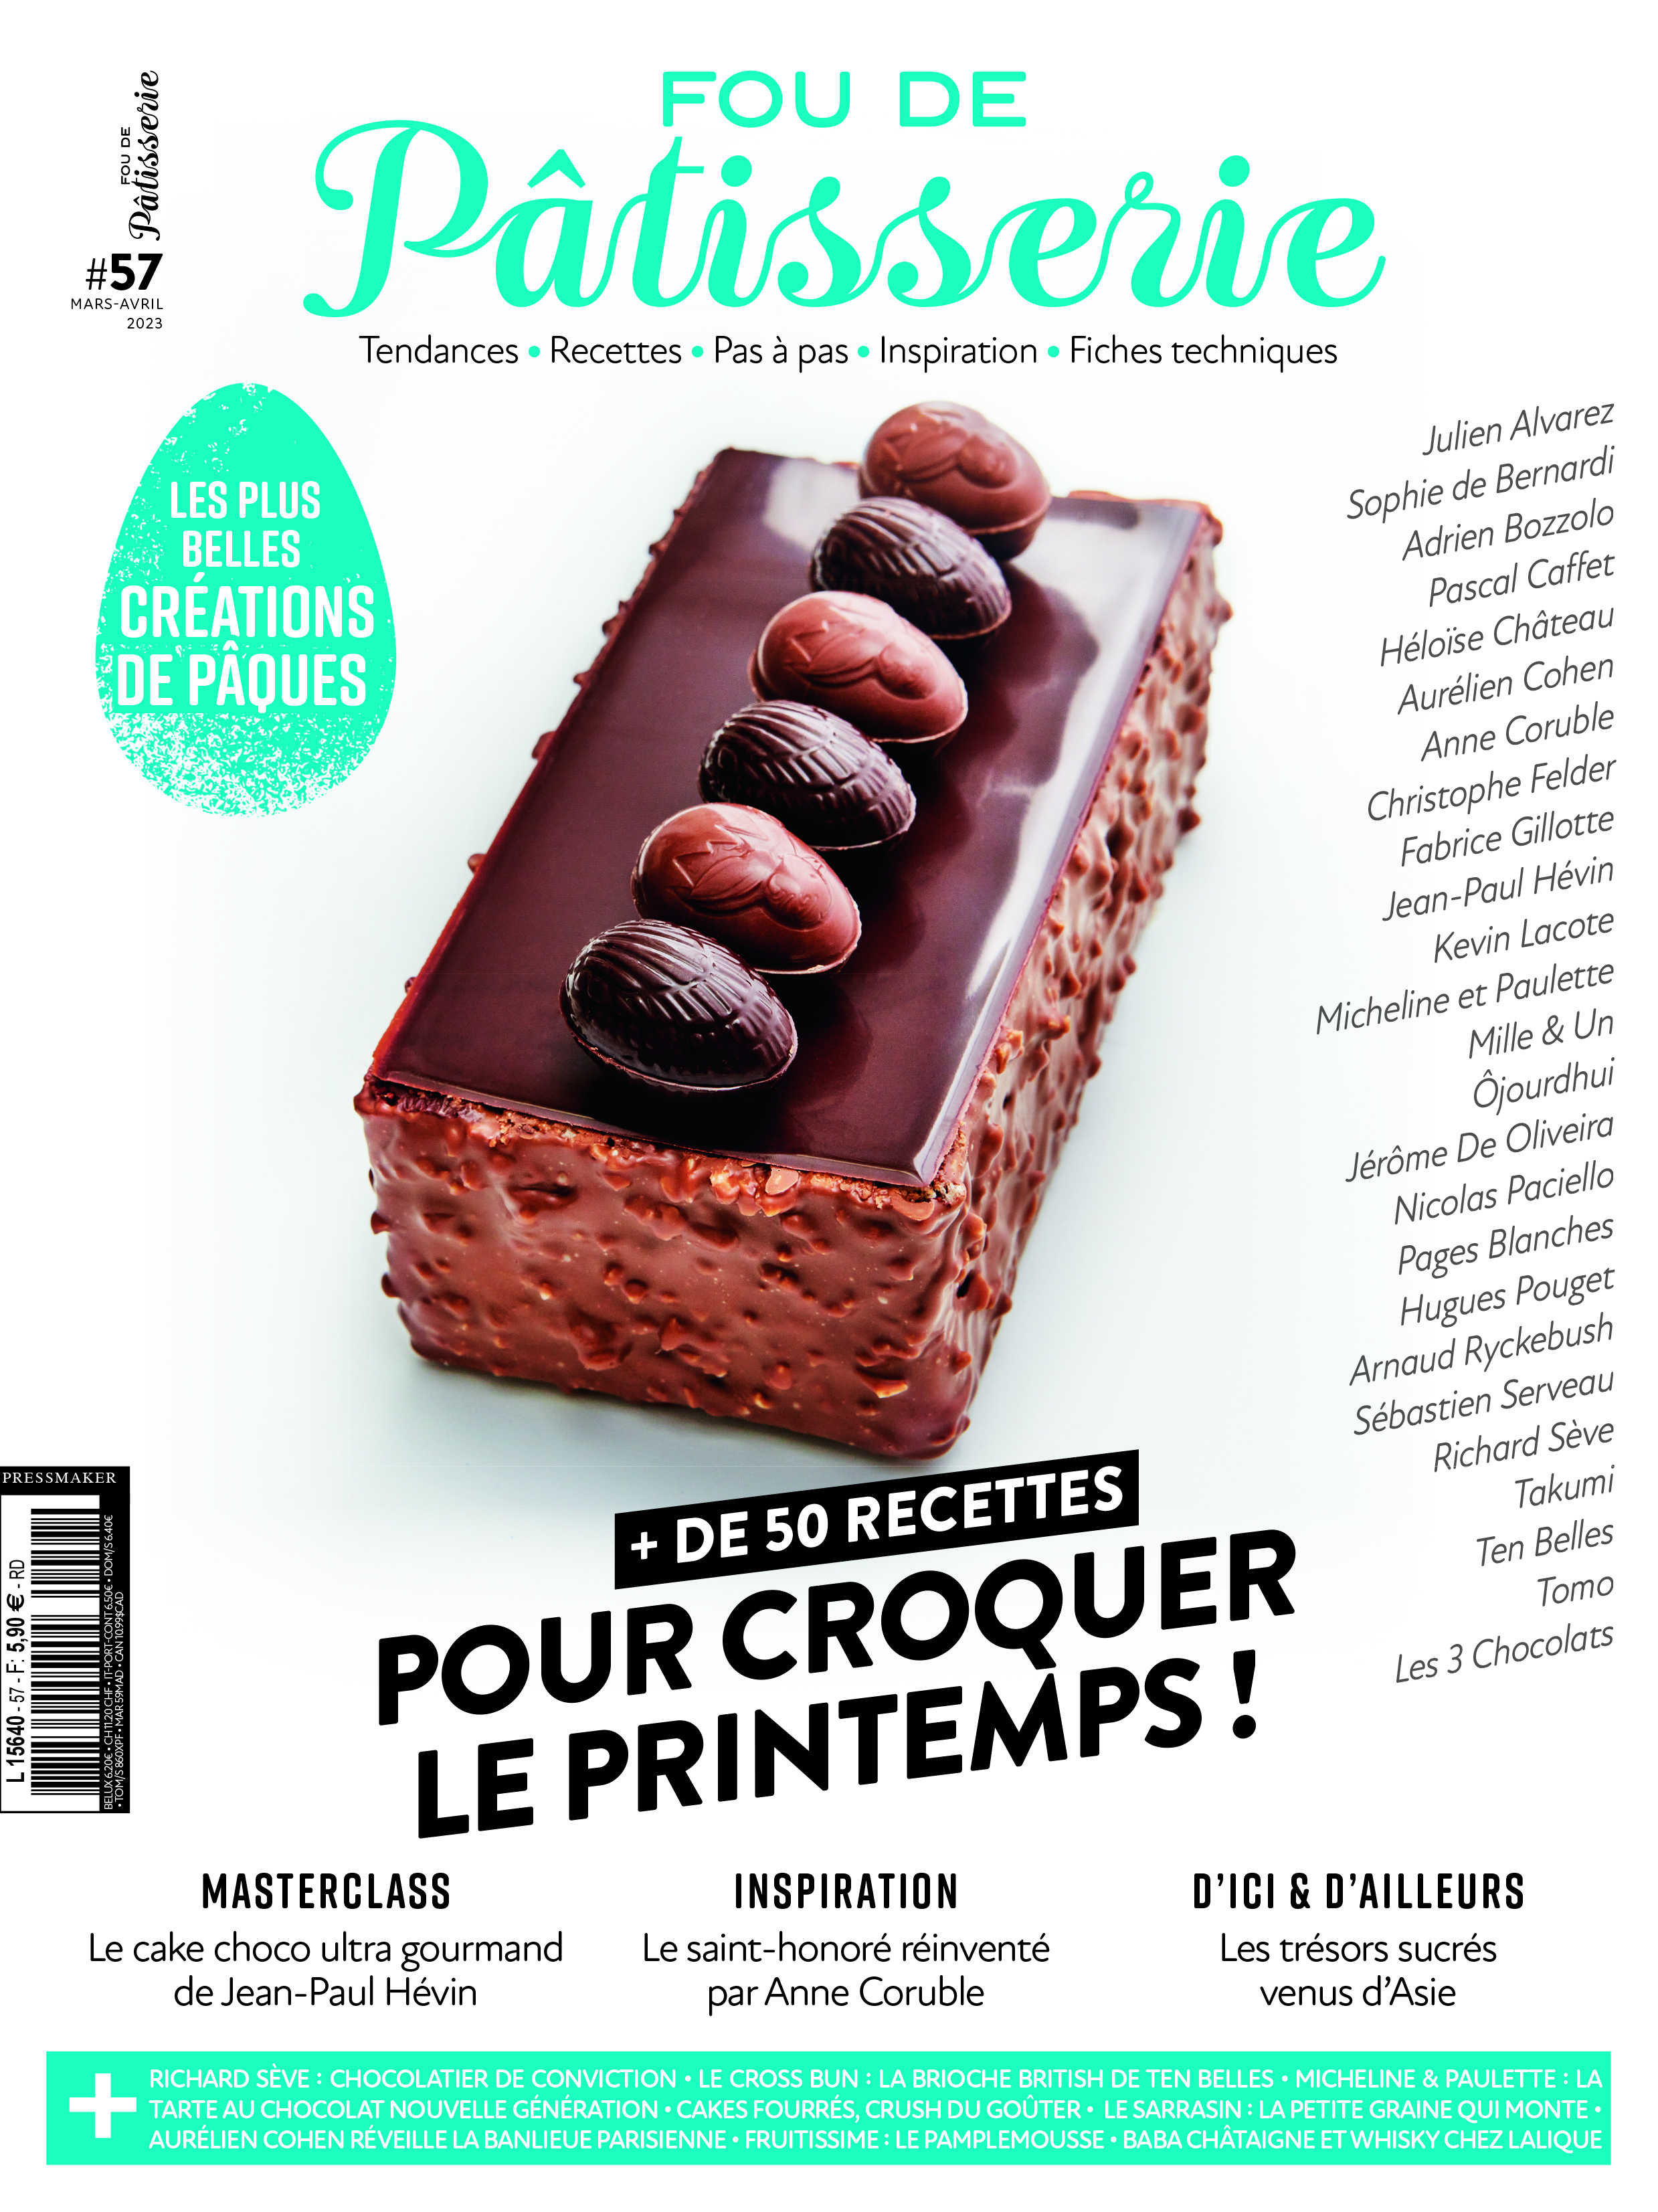 N°57 - Magazine Fou de pâtisserie